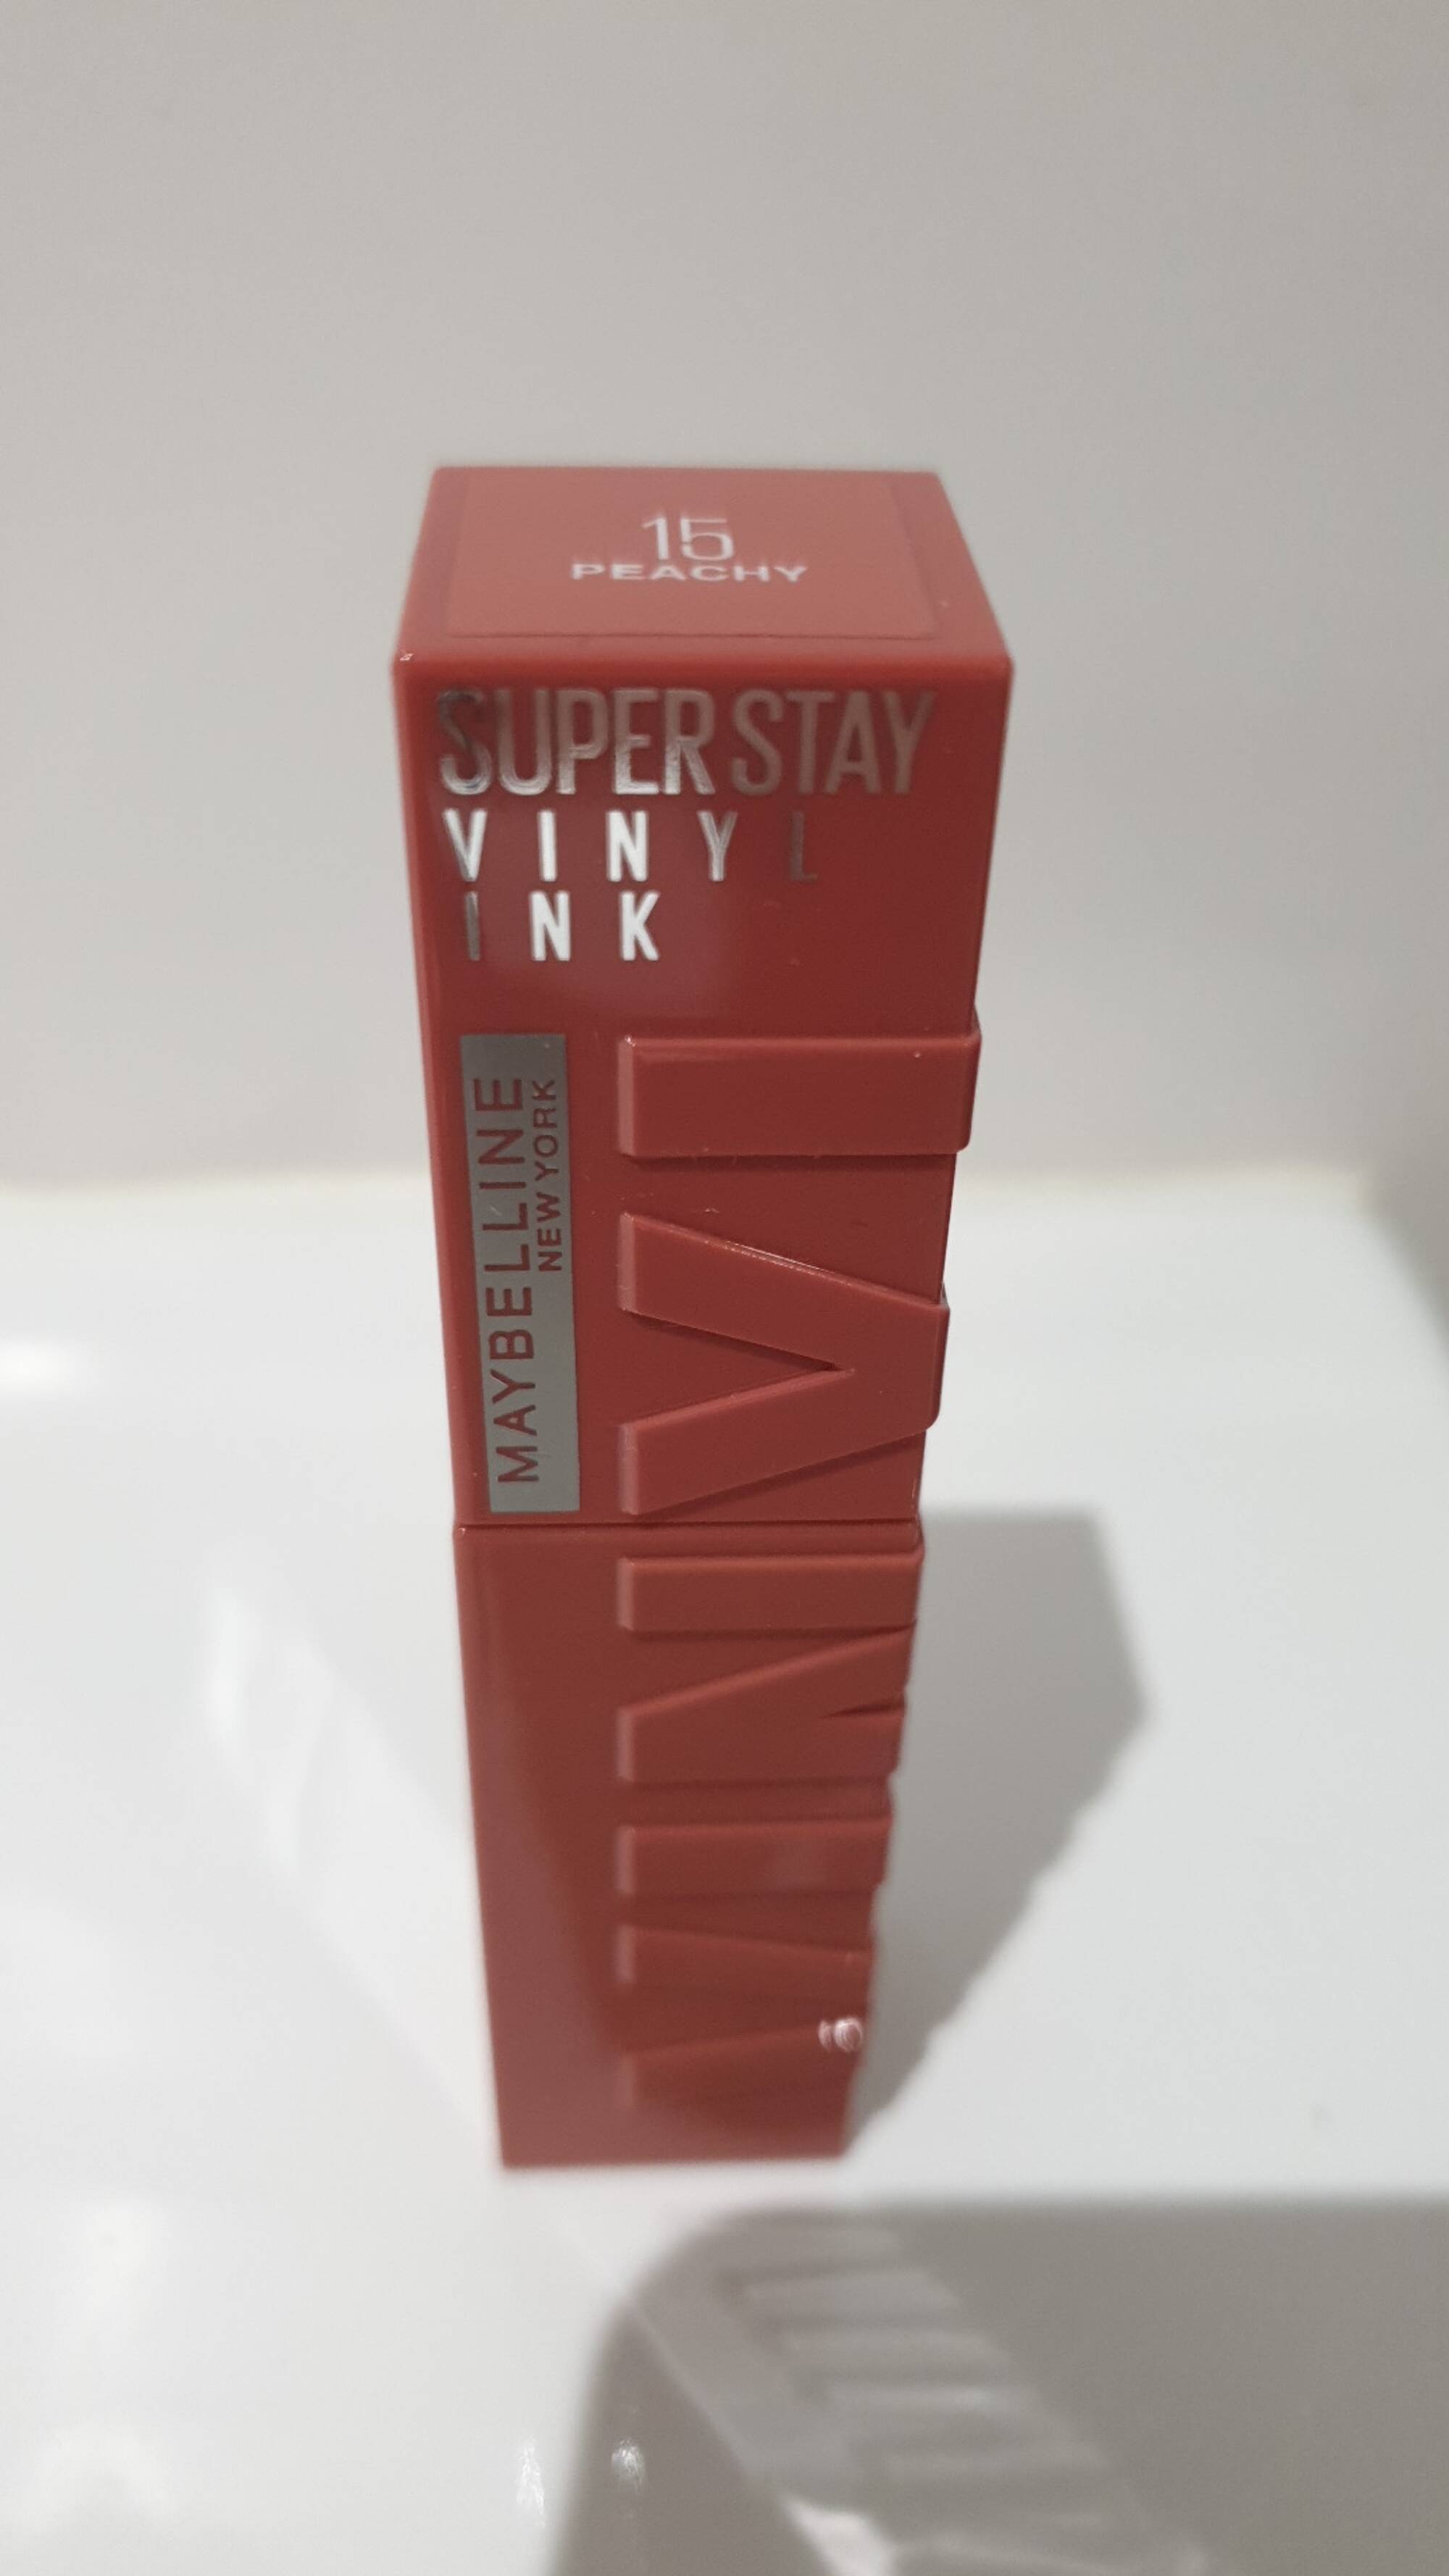 MAYBELLINE - Superstay vinyl ink 15 peachy